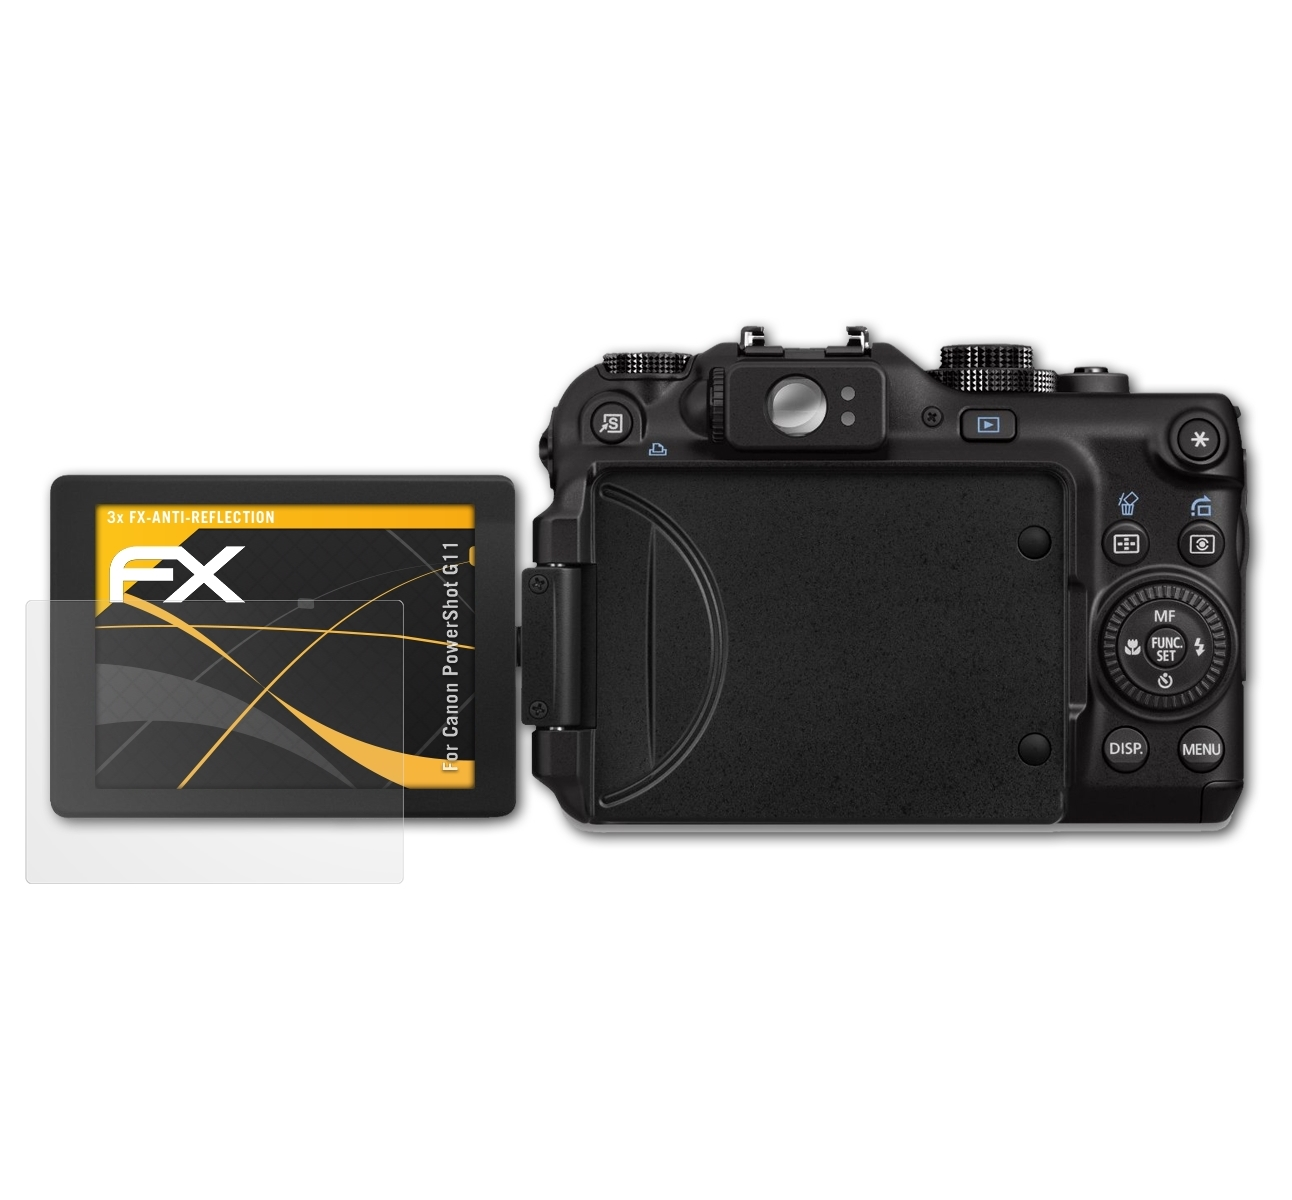 3x Displayschutz(für Canon G11) PowerShot FX-Antireflex ATFOLIX